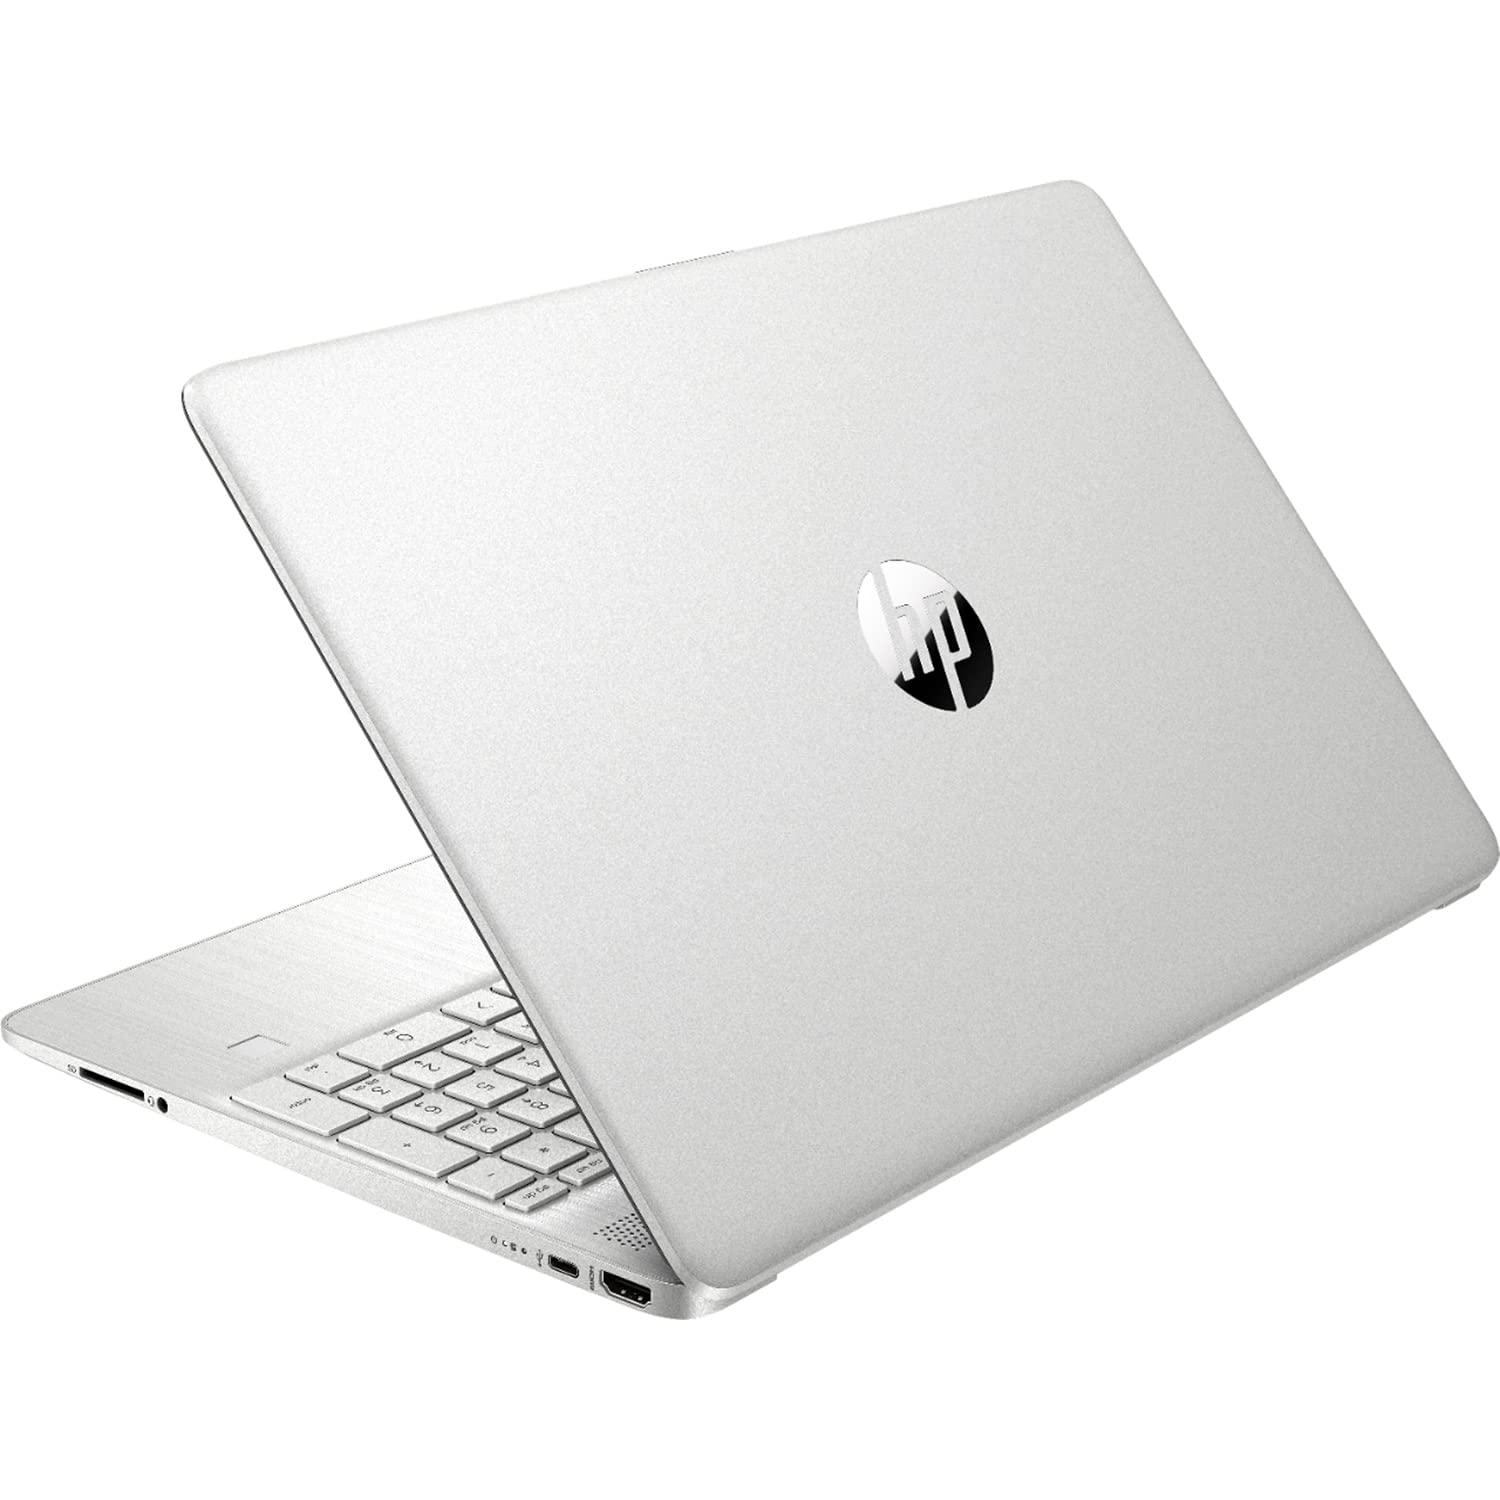 HP 15 Notebook Laptop, 15.6